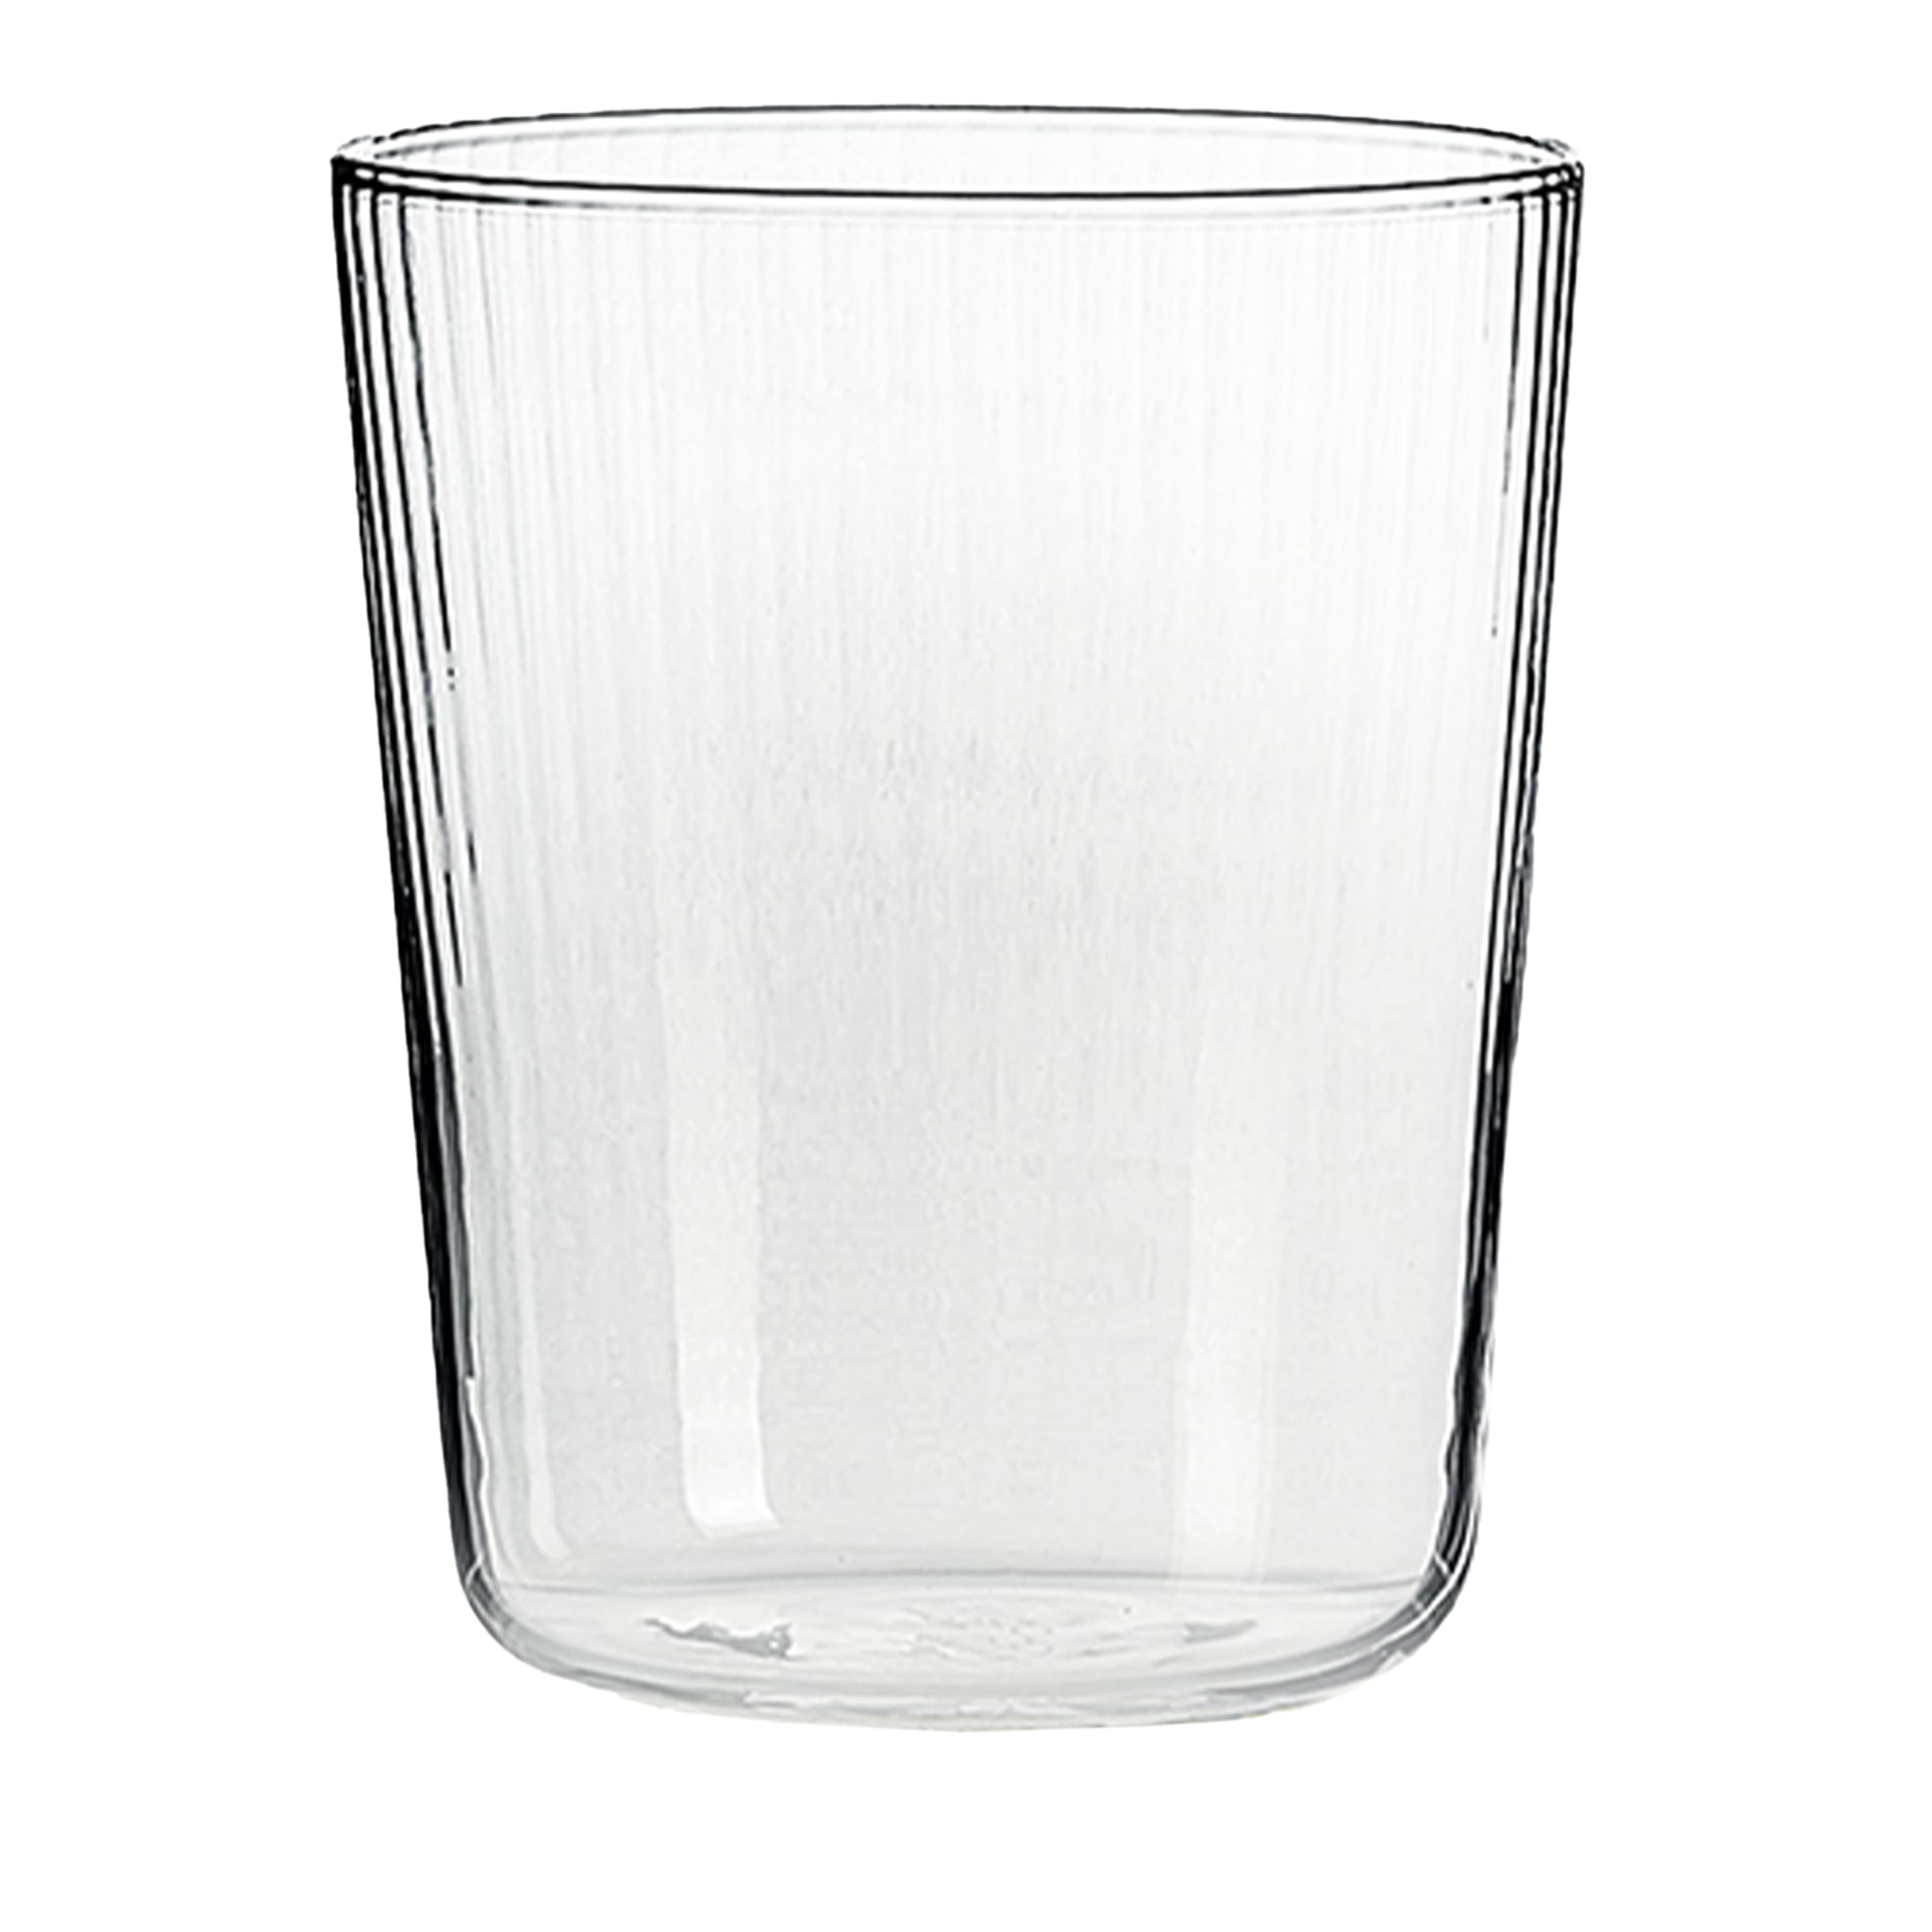 Lote de 6 vasos transparentes para ginebra - Vista principal